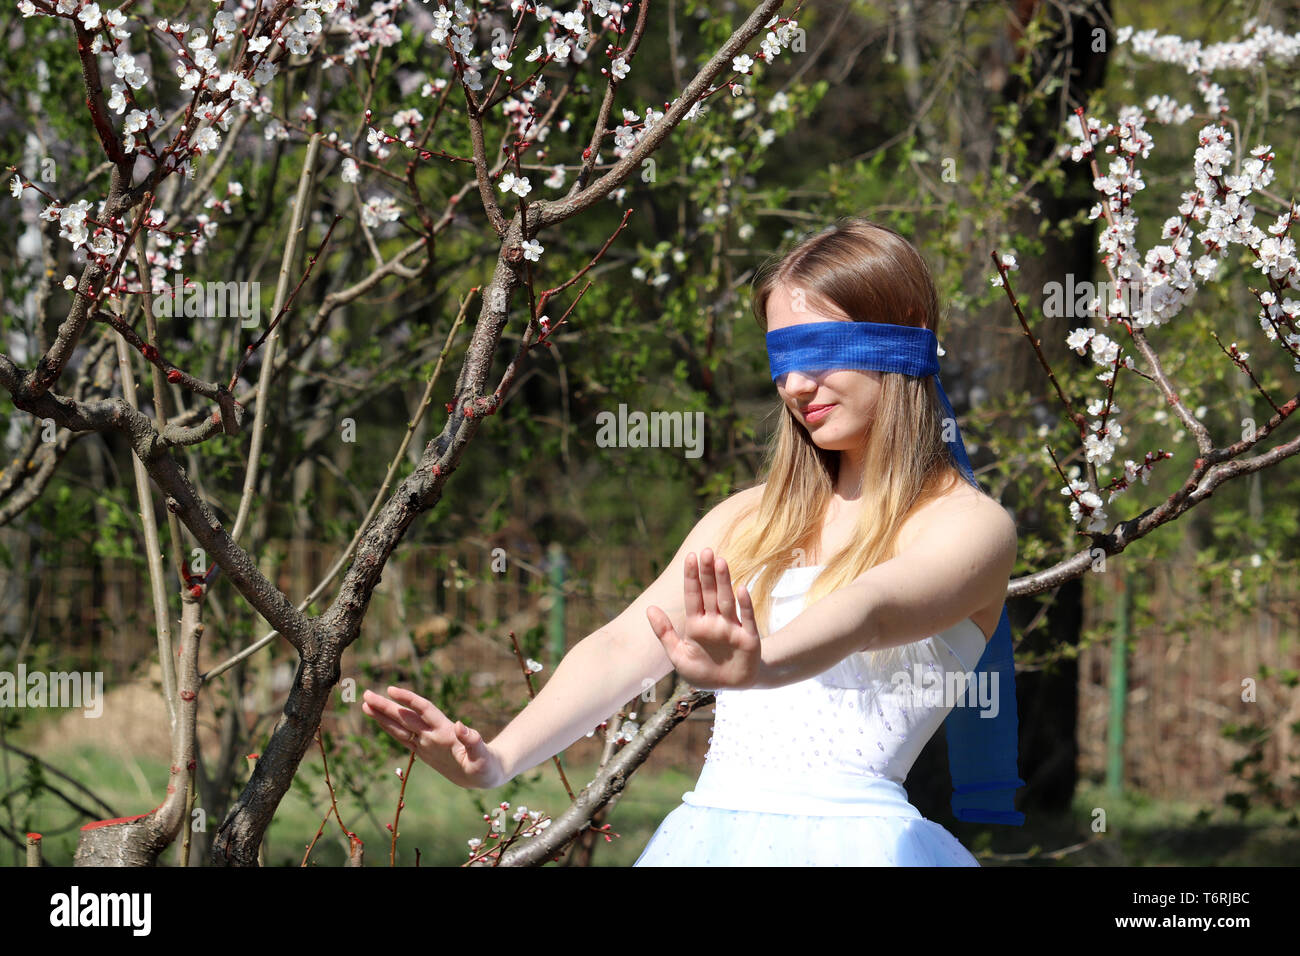 La saison des cerisiers en fleur dans le jardin botanique de Moscou. Jeune fille aux yeux bandés sur fond d'arbre sakura, loisirs au printemps Banque D'Images